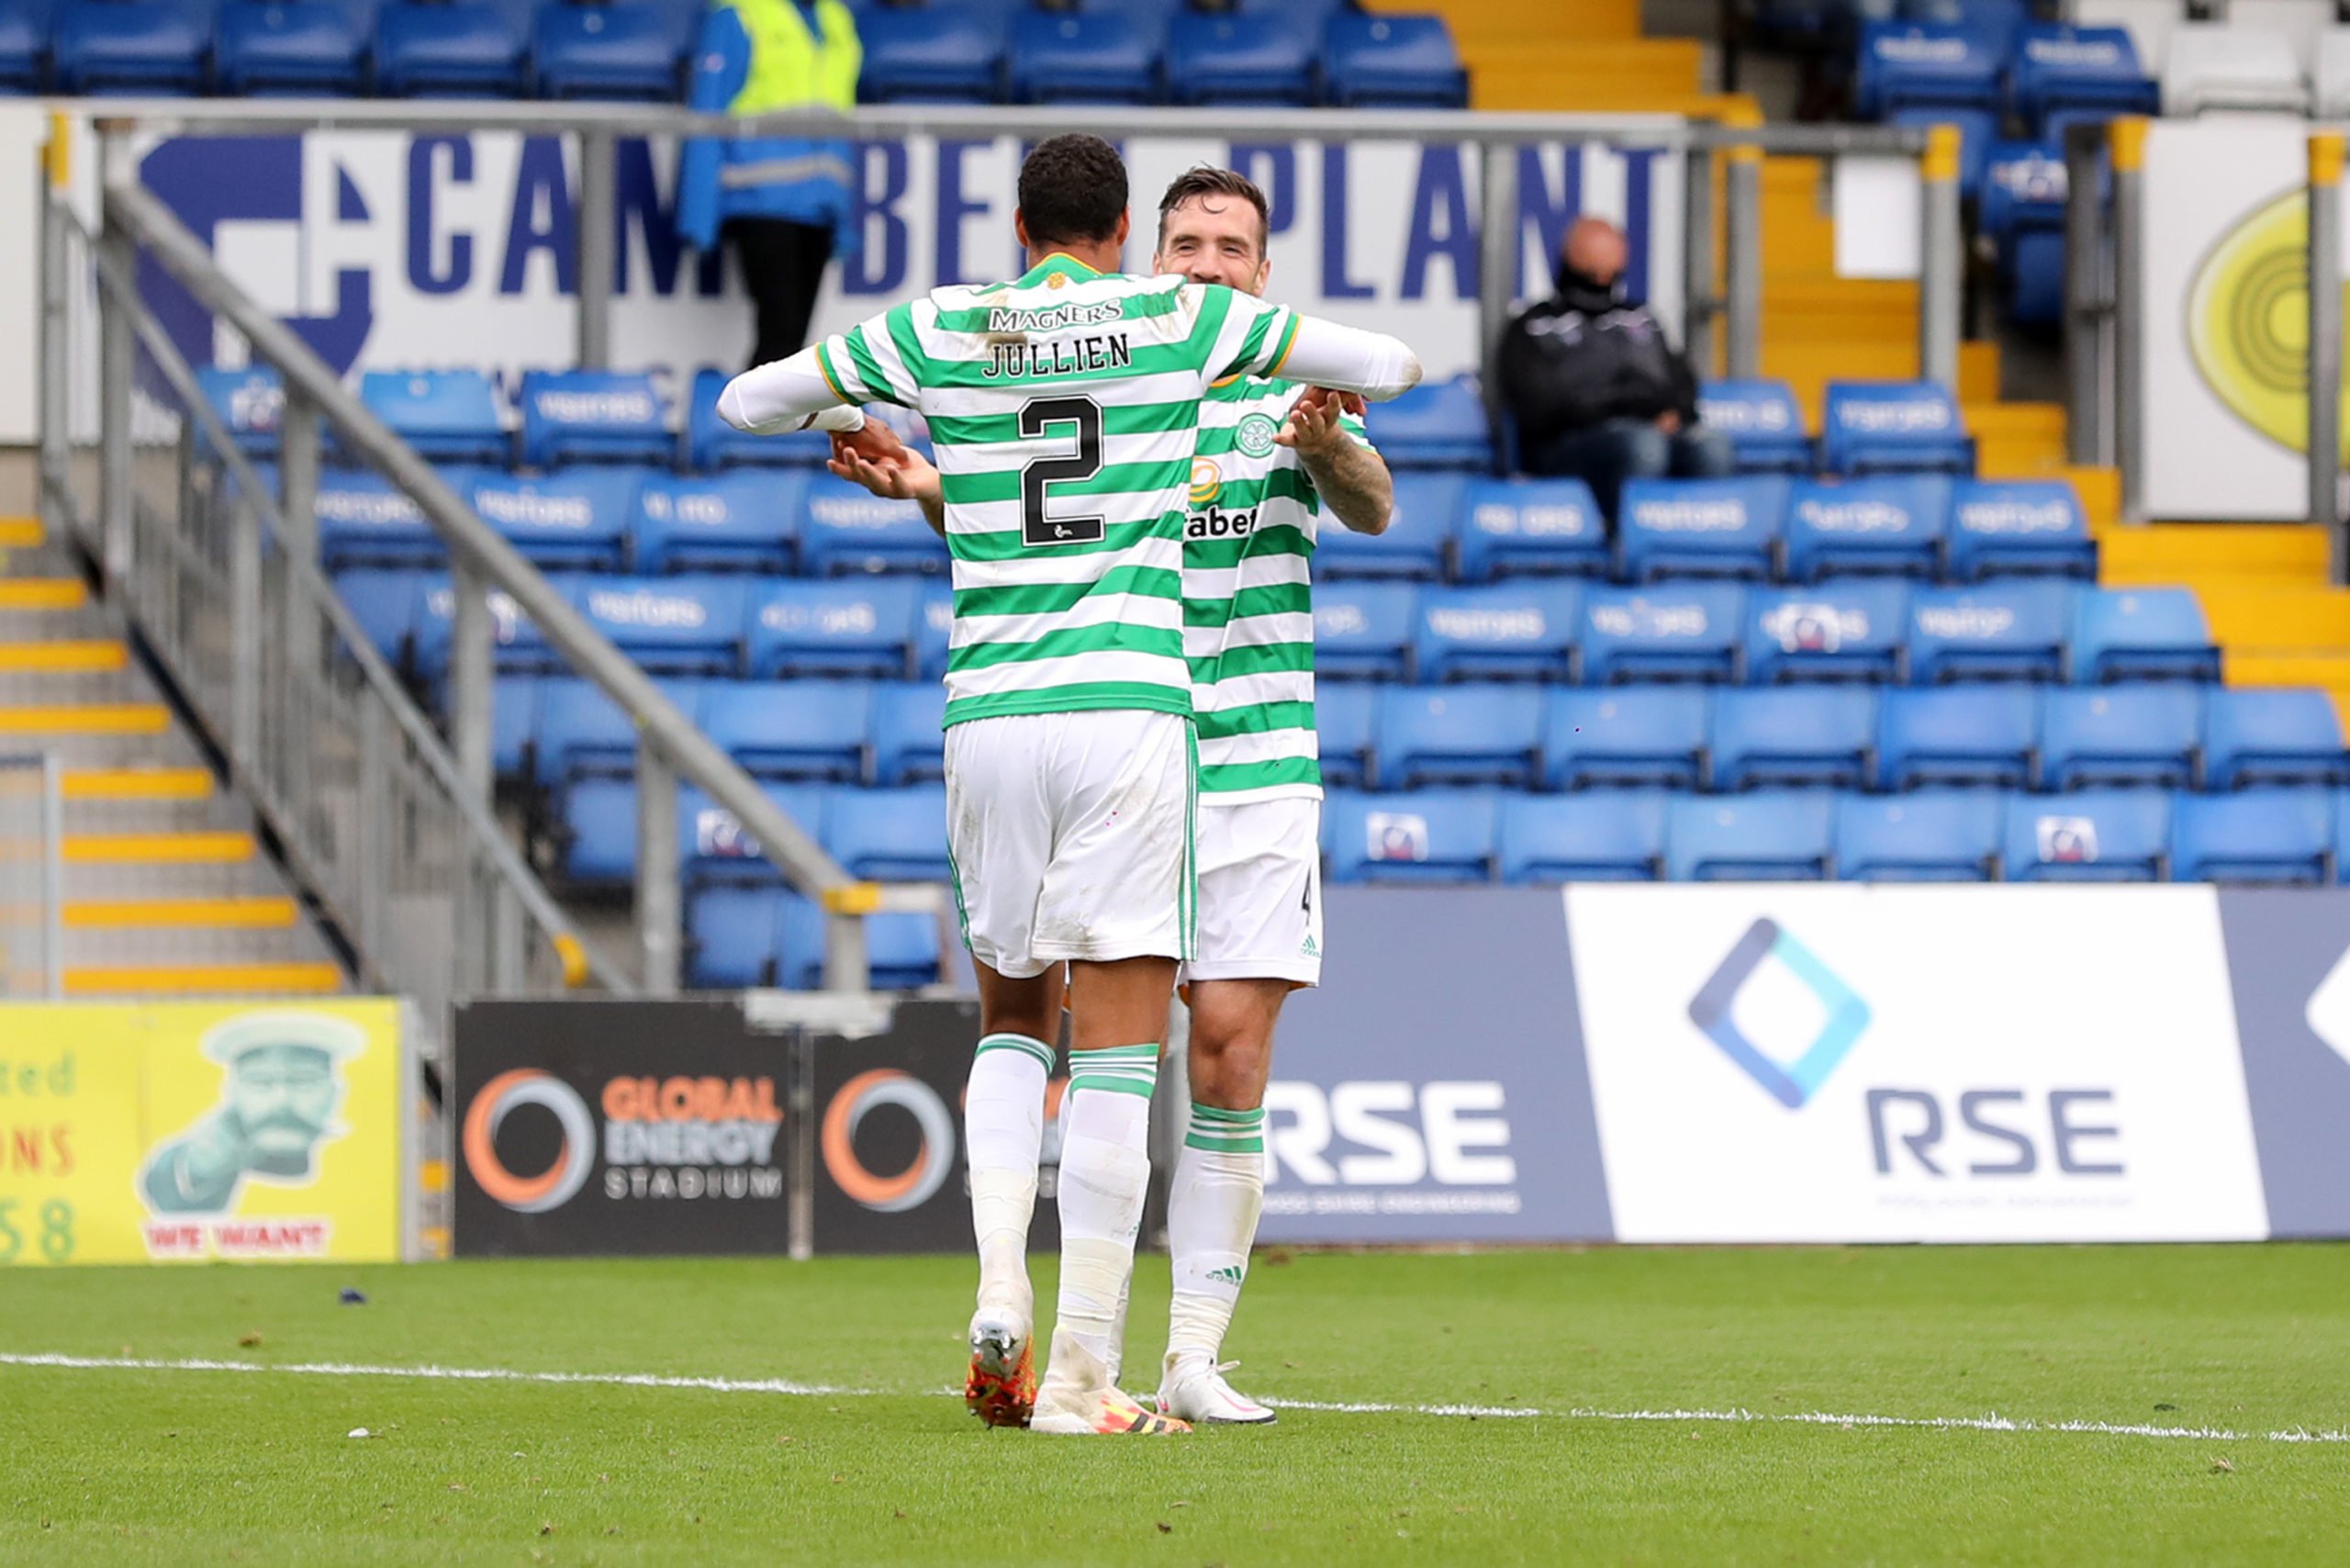 Celtic have enough quality centre-backs